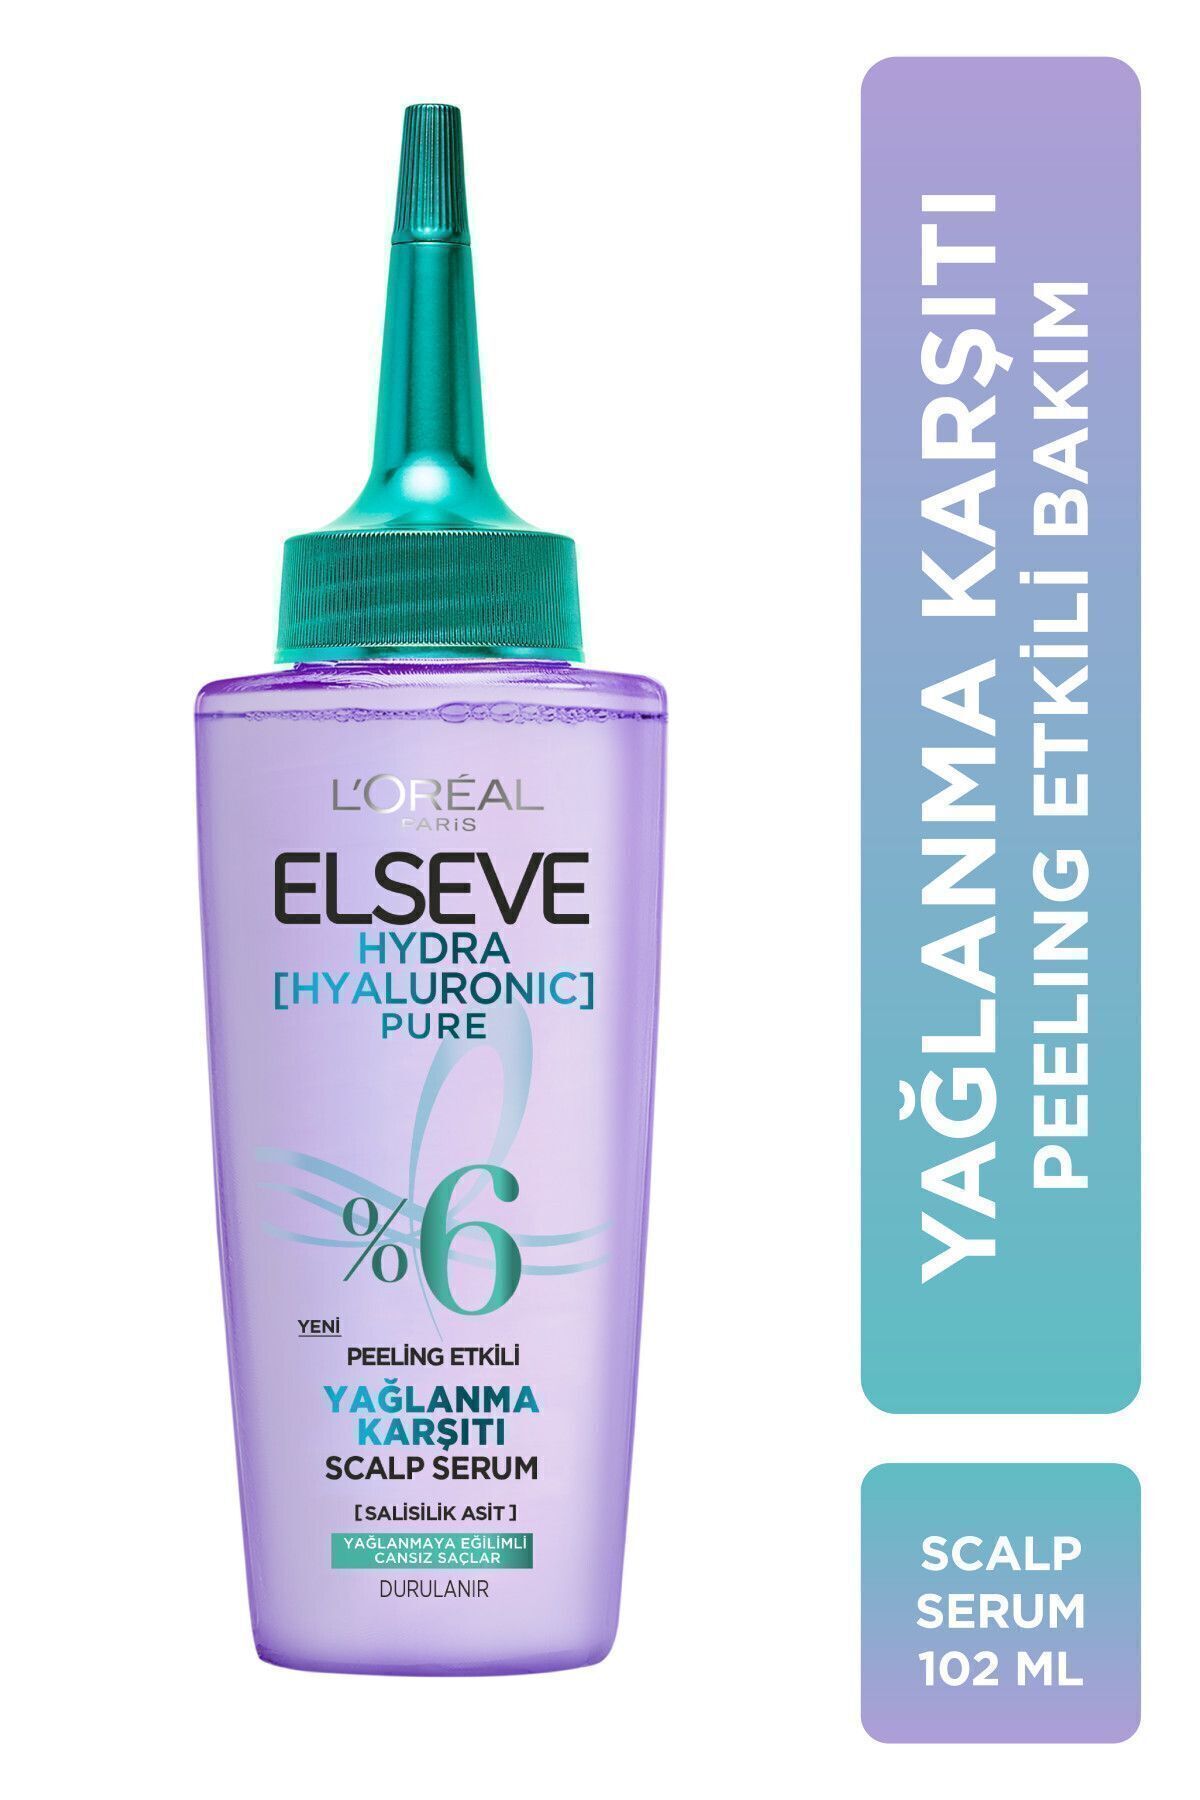 Elseve Hydra[hyaluronic] Pure Salisilik Asit Içeren Yağlanma Karşıtı Peeling Etkili Saç Derisi Serumu 102ml